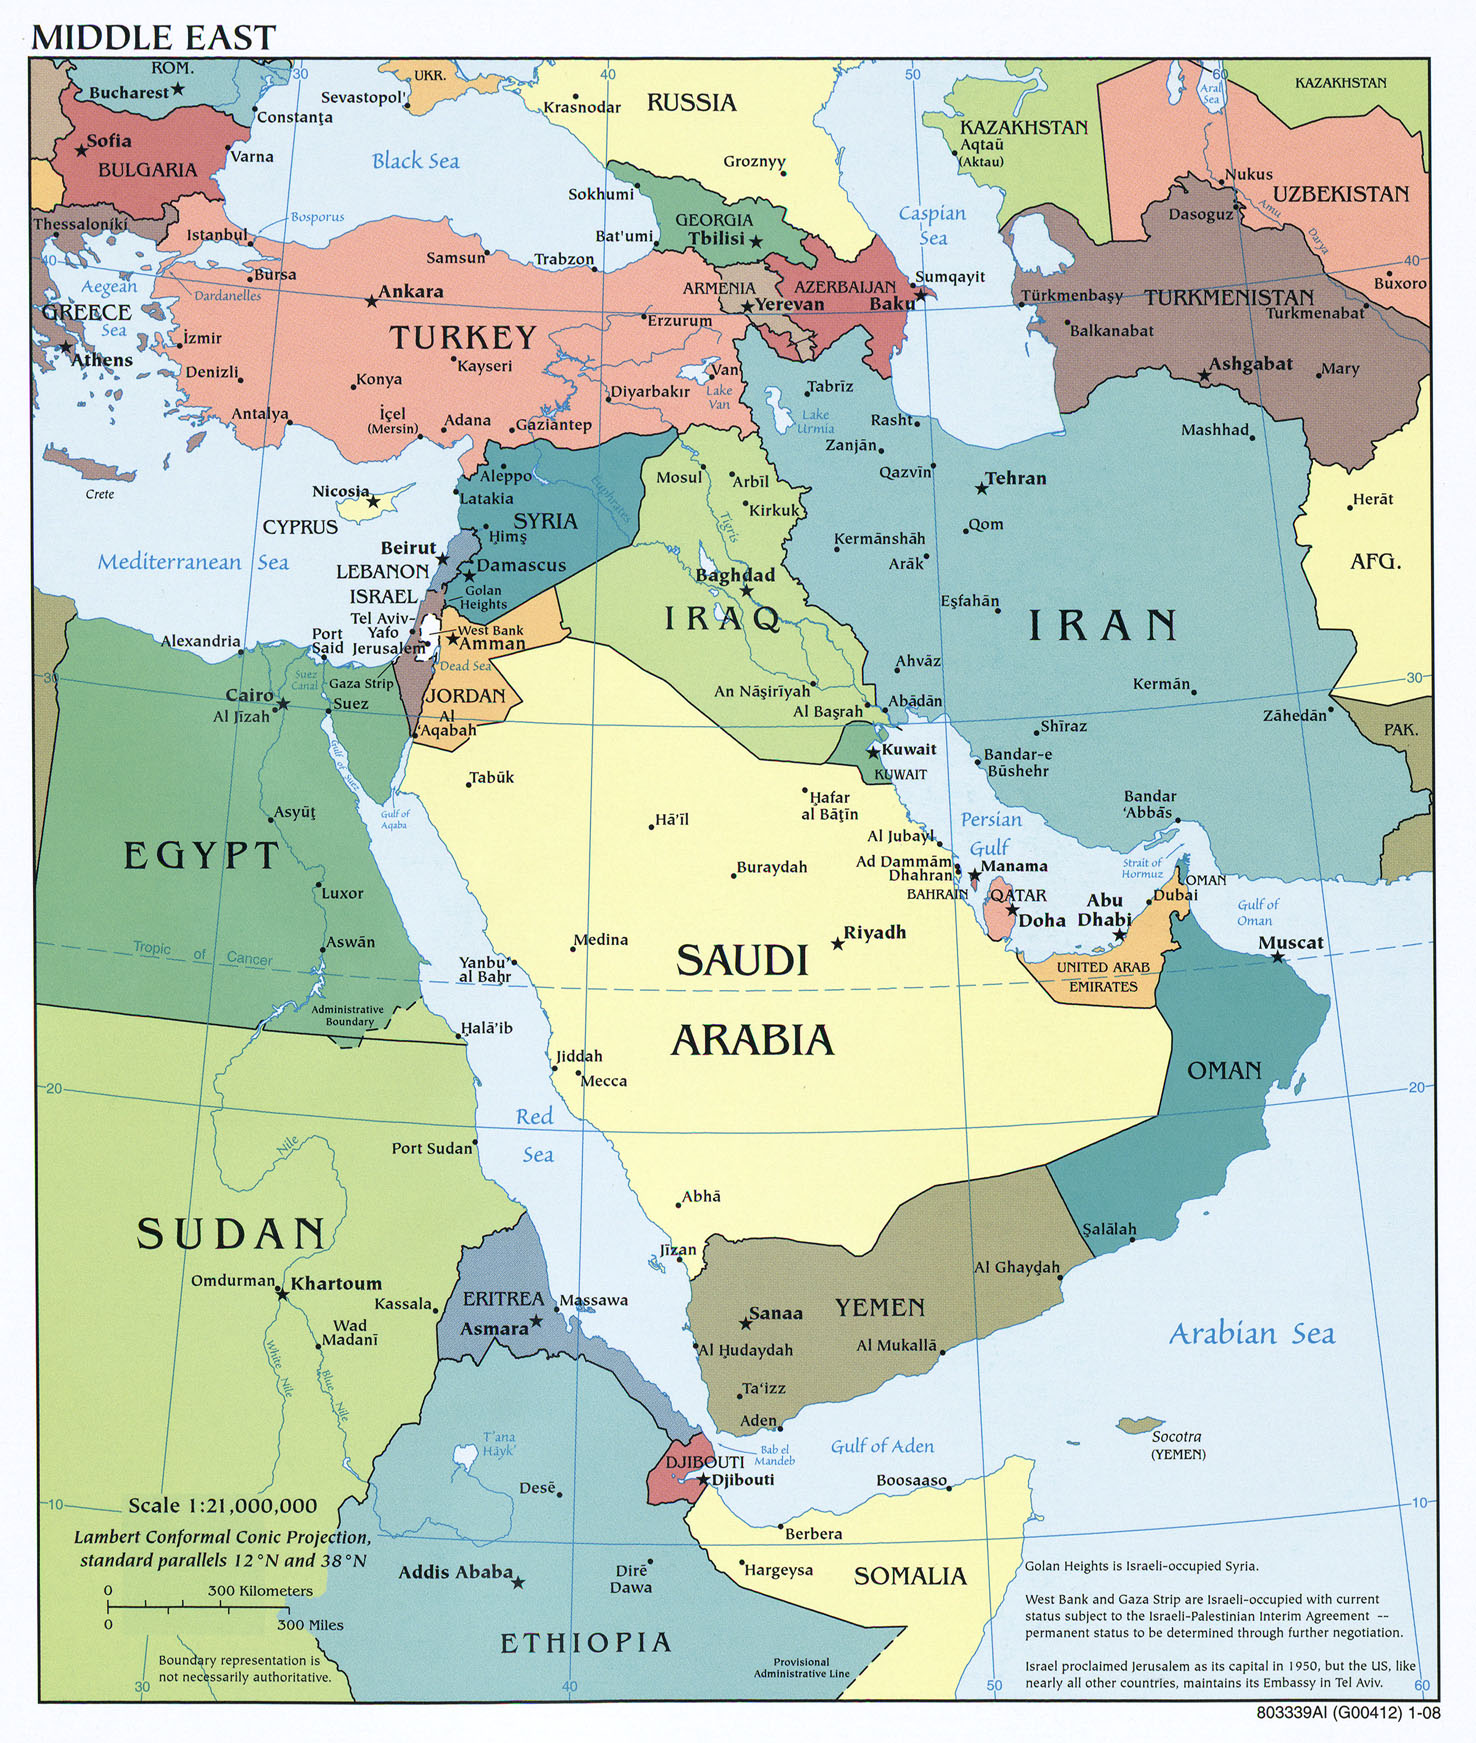 Guerra entre Arabia Saudita y Yemen - Página 7 Mapa_de_Oriente_Medio